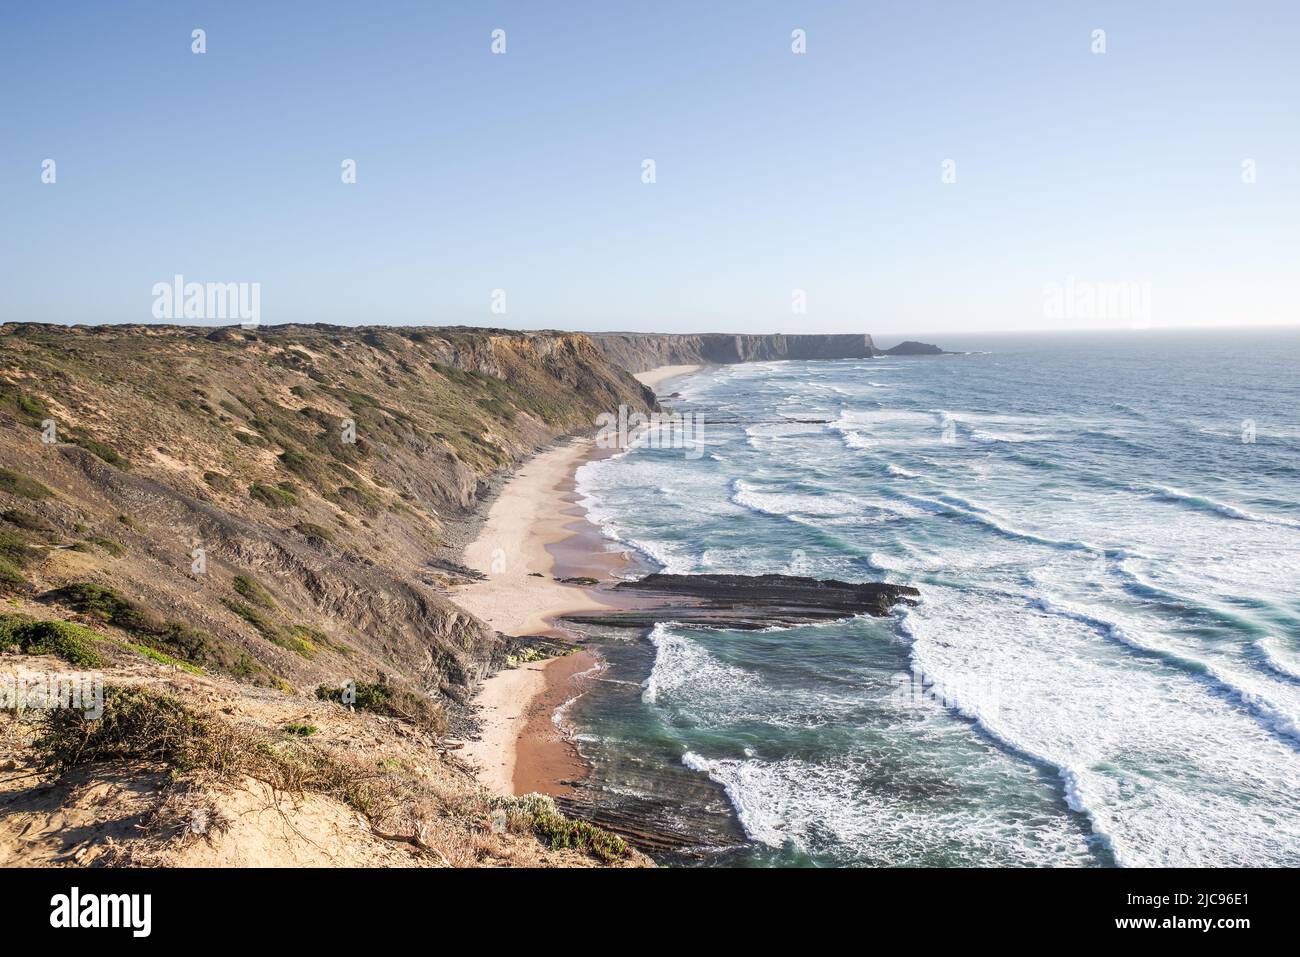 Blick auf den Strand Praia do Coelha von den Klippen der Costa Vicentine in der Nähe des Monte Clerigo - Algarve, Portugal Stockfoto